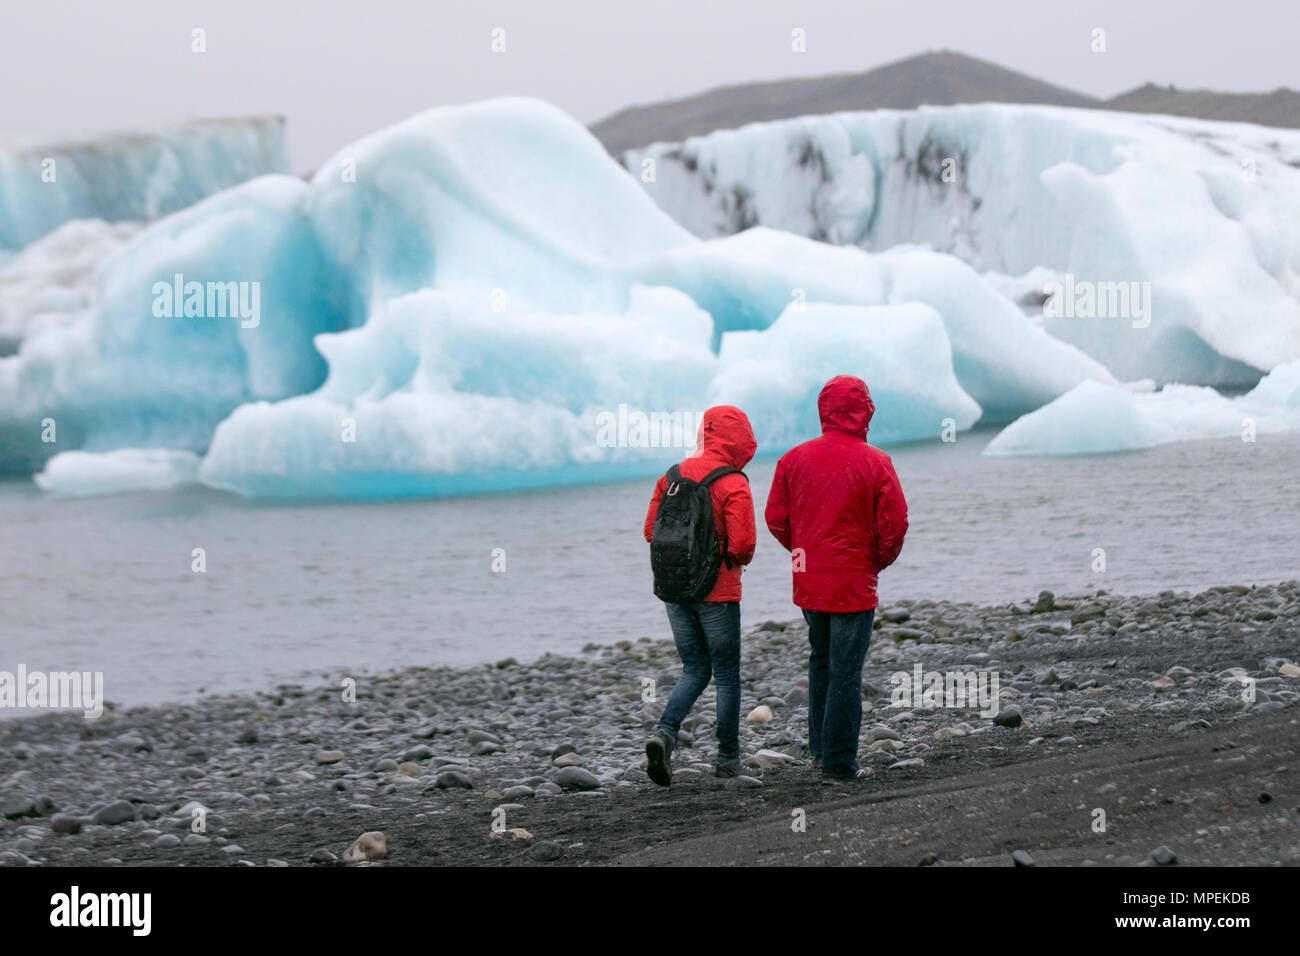 Ice Cap schmelzende Gletscher, Schnee, Eis, Gletscher, Meereis und Permafrost; eine berühmte touristische Lage, die Jokulsar Gletscherlagune, Island, manchmal bekannt als Jokulsarlon, es ist eines der beliebtesten Reiseziele in der ICELANDS. Stockfoto